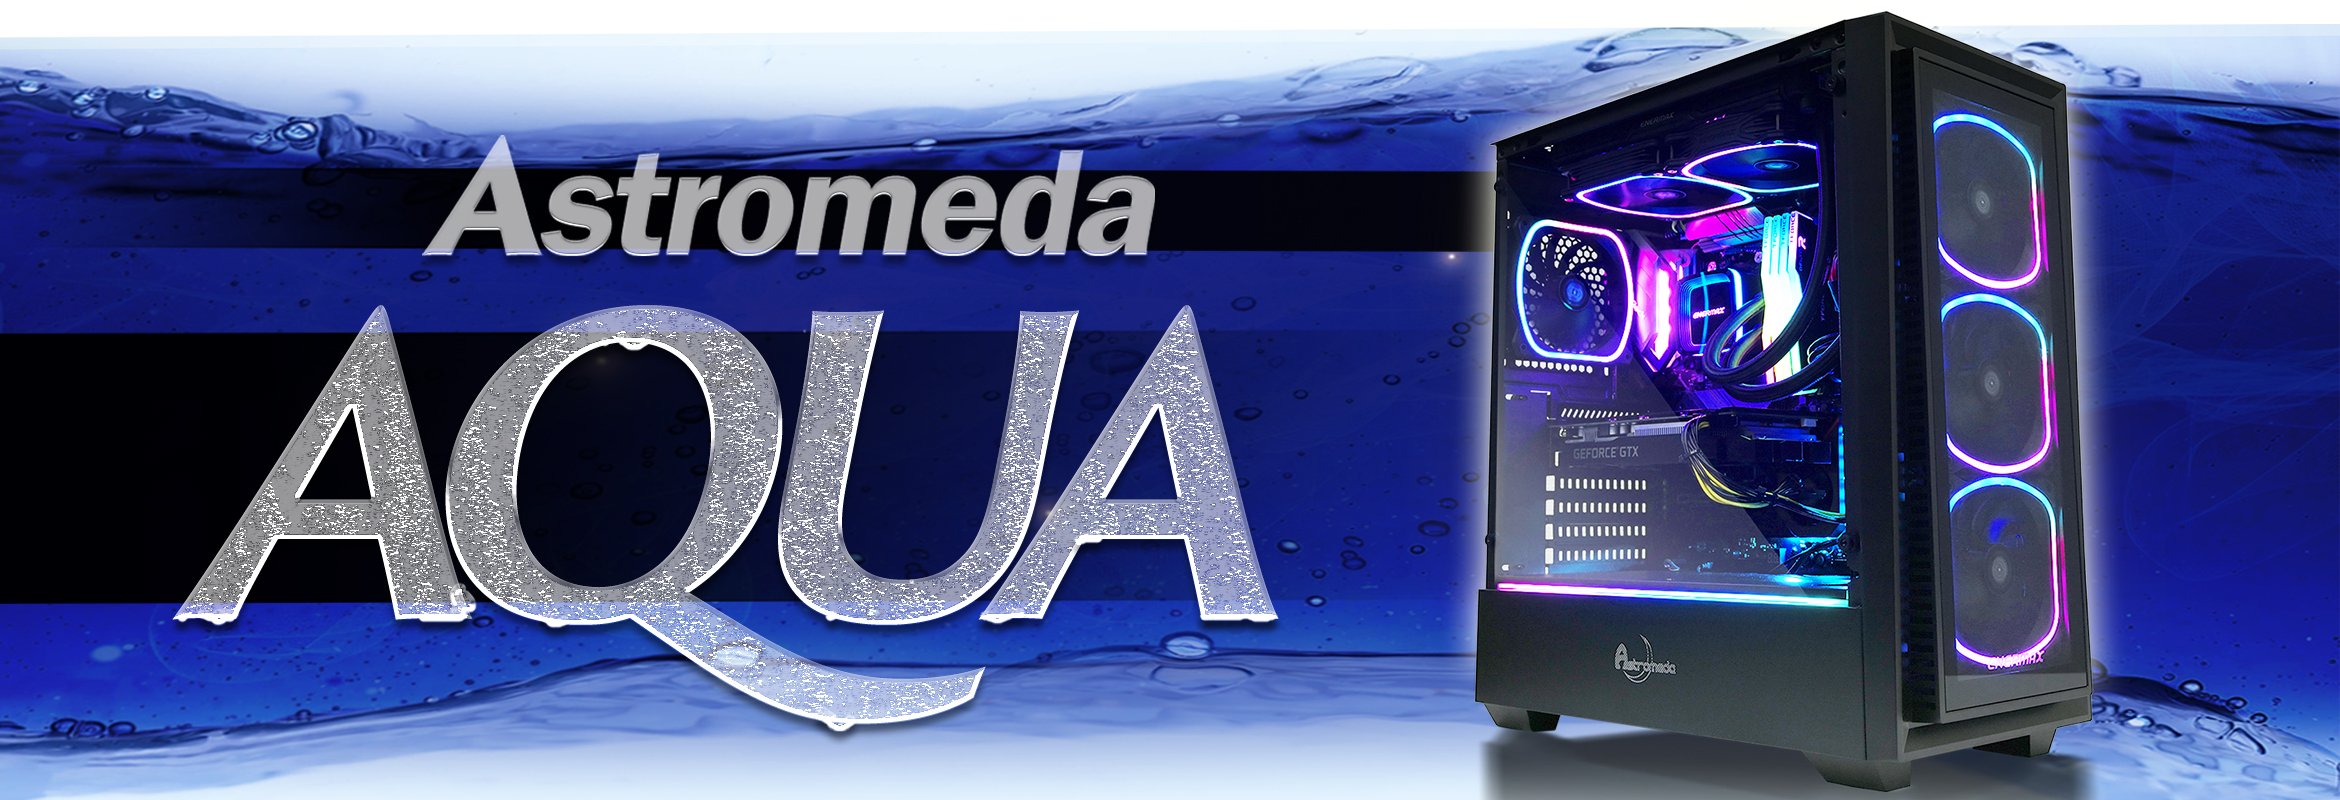 PC/タブレット デスクトップ型PC 光るPCで話題】Astromeda(アストロメダ)の評判とおすすめゲーミングPC 